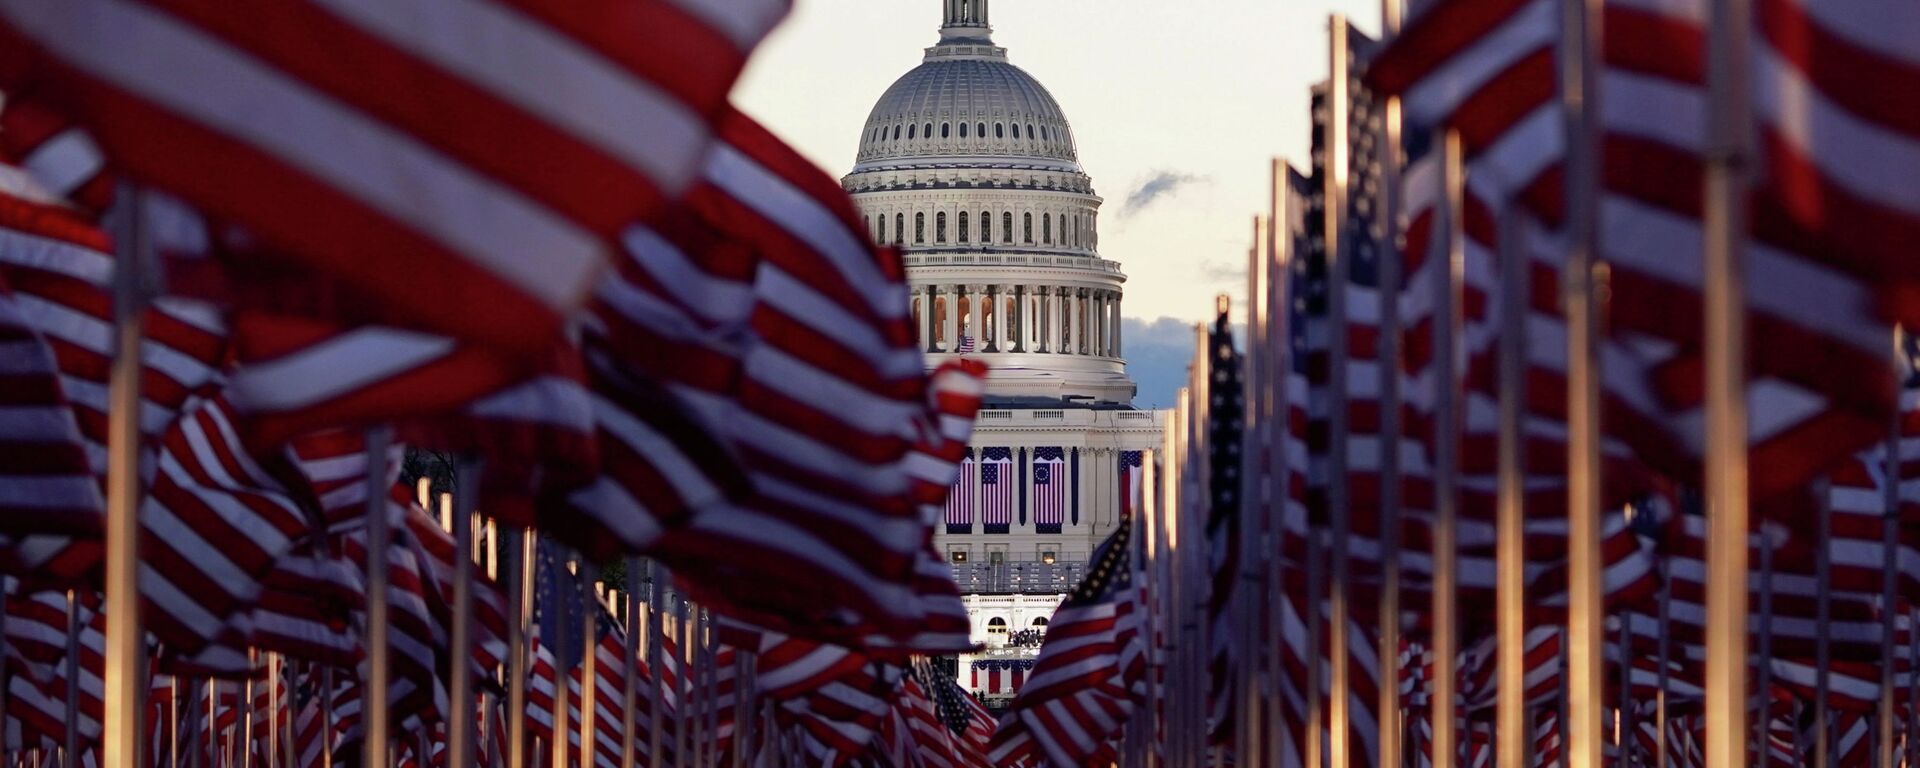 Флаги США перед зданием Капитолия в Вашингтоне. Архивное фото - Sputnik Кыргызстан, 1920, 01.02.2021